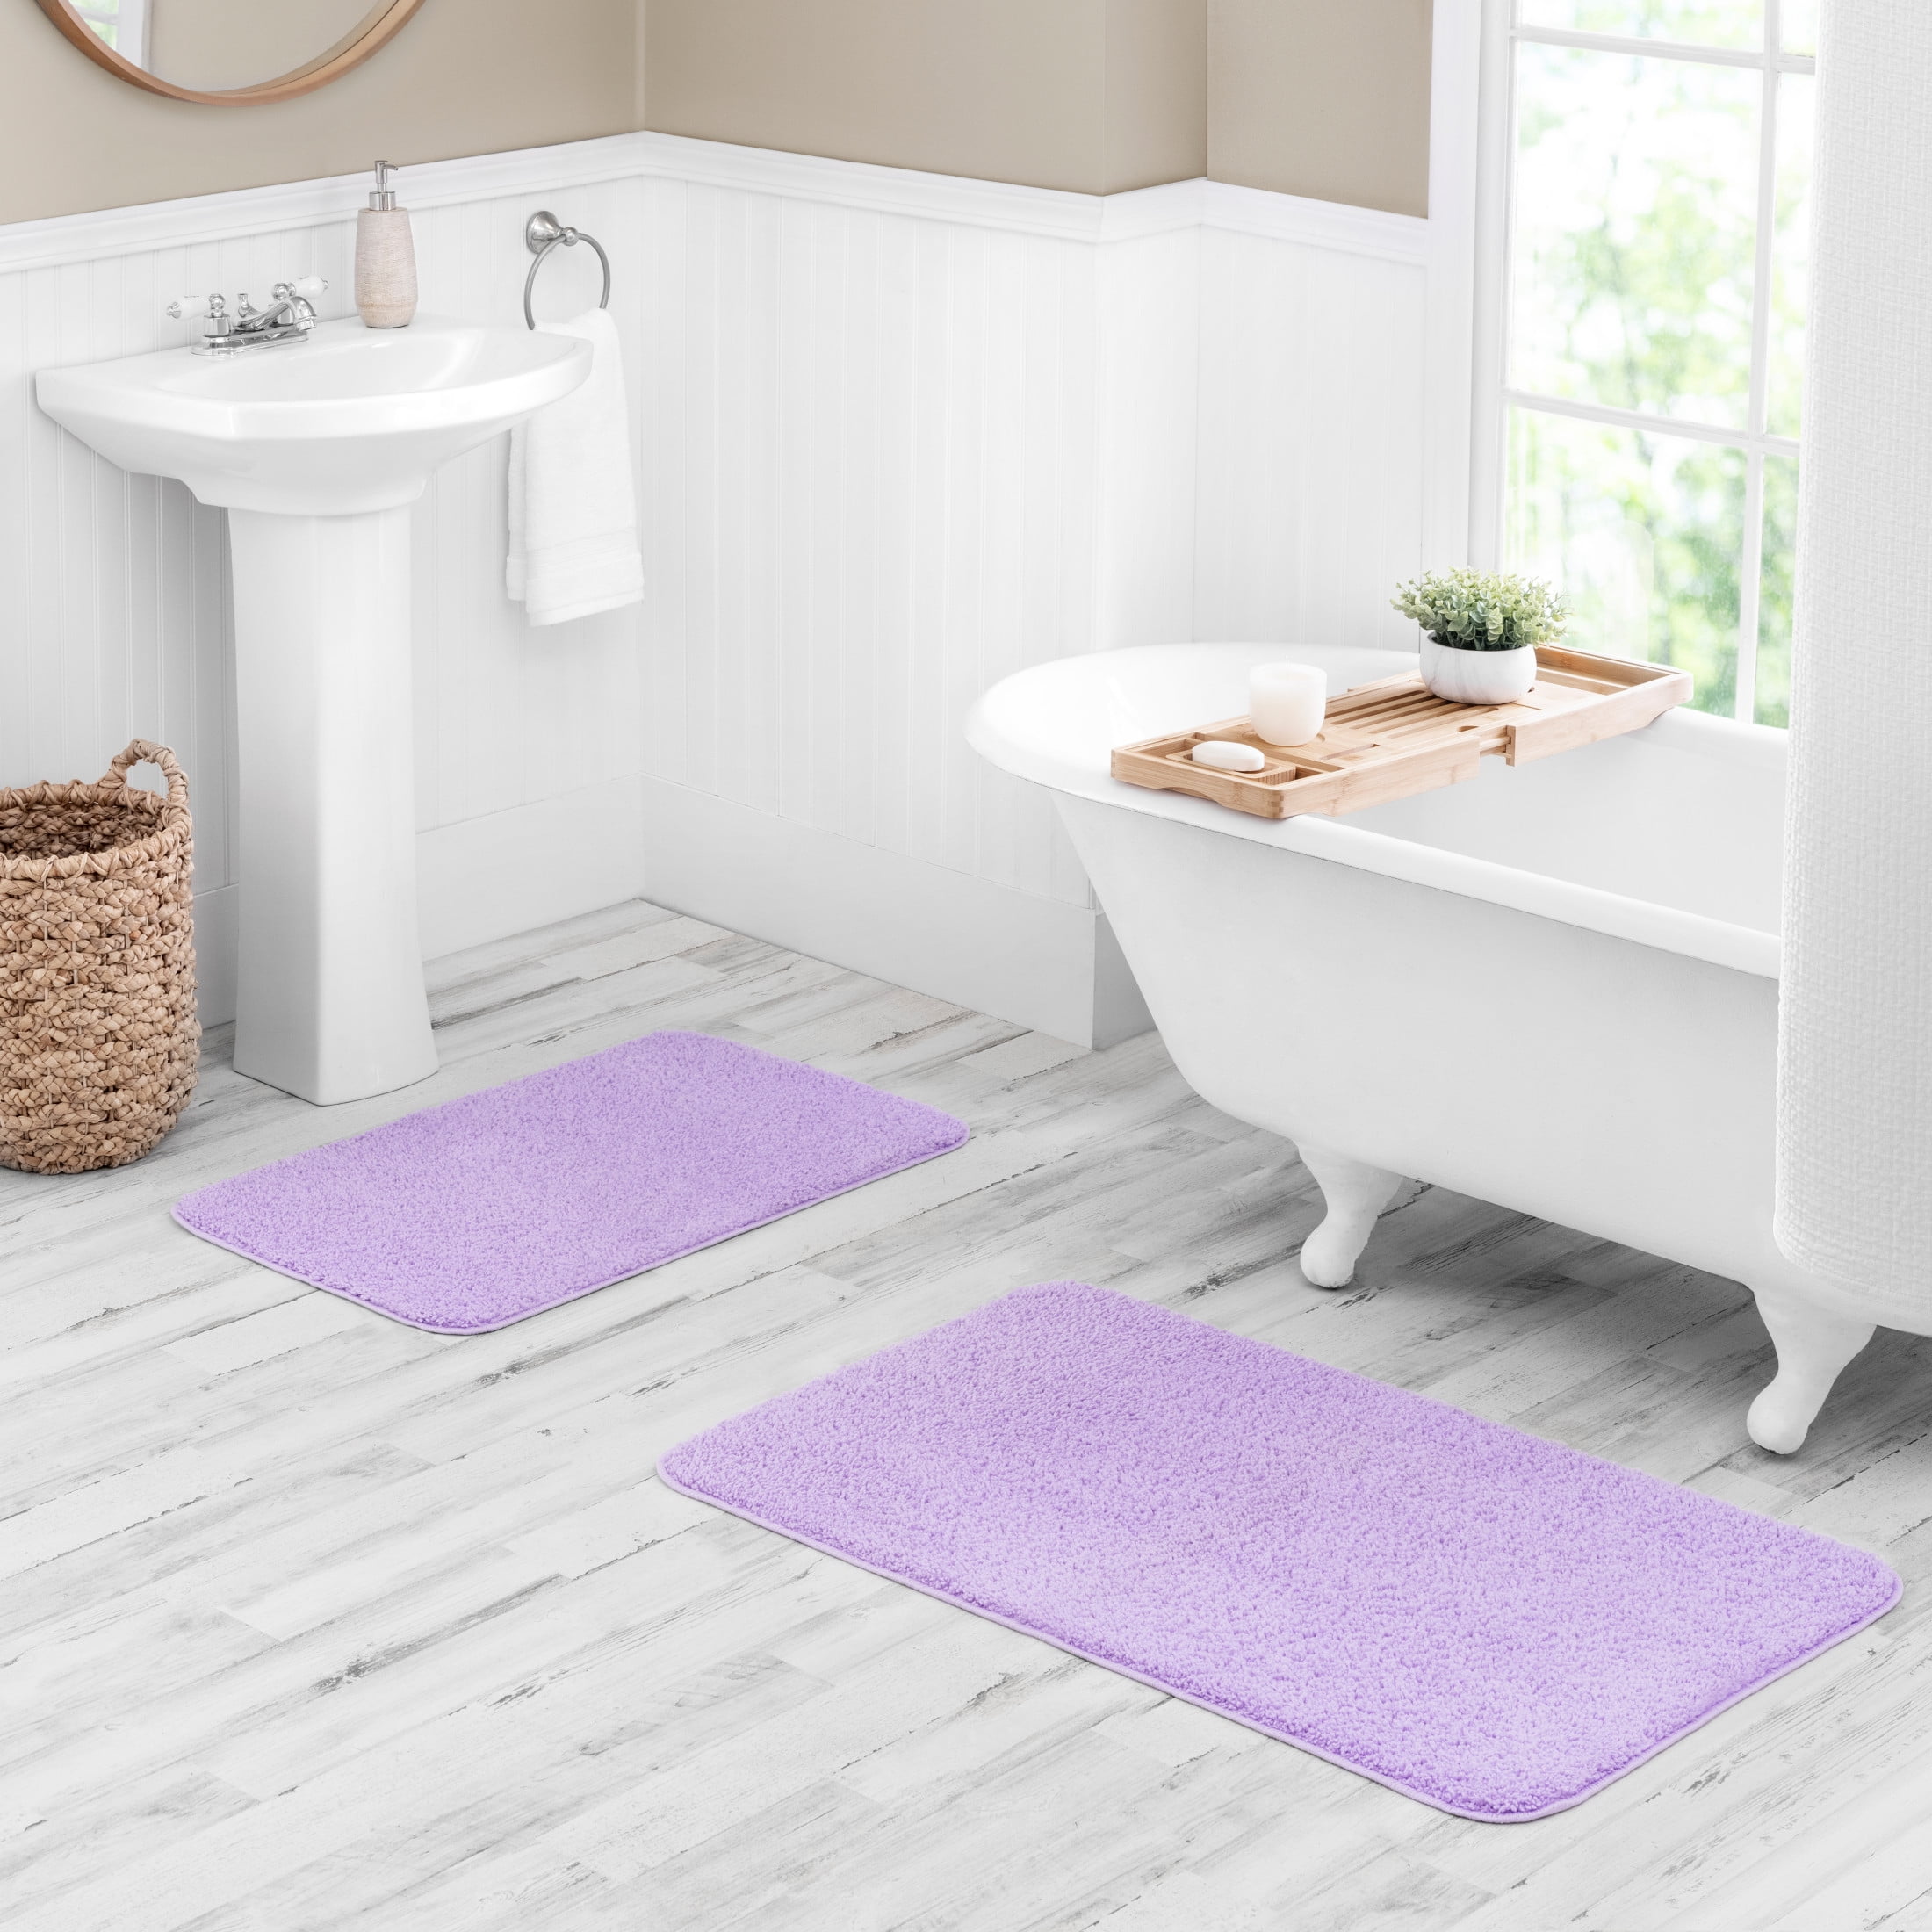 Walensee Shaggy 2 Piece Bath Rug Sets (Lavender) 20 x 24 U Shape Contour  Rug & 20 x 32 Bathroom Rug Machine Wash/Dry Bath Mats for Bathroom Plush